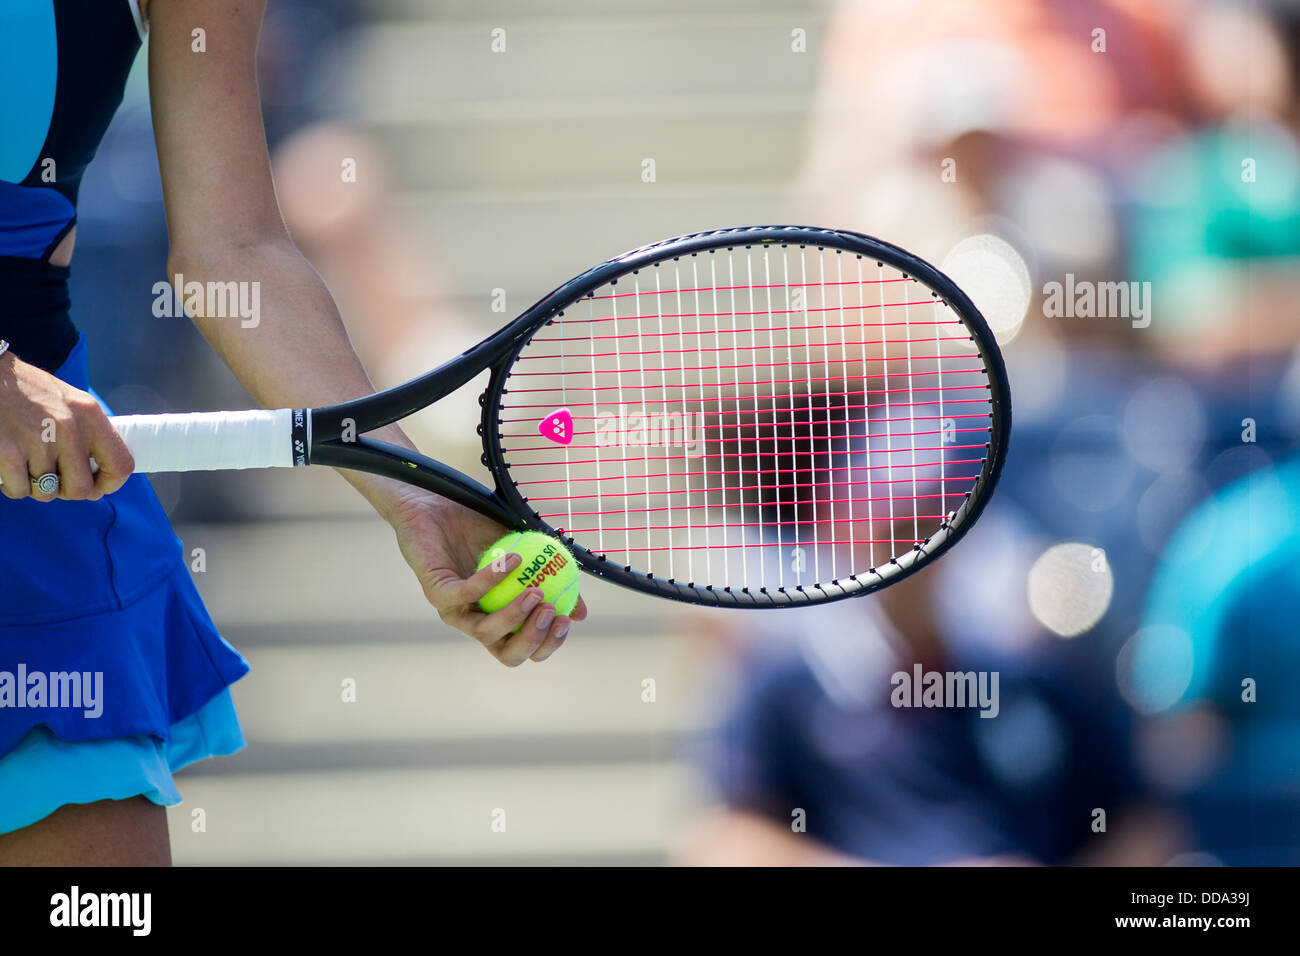 Détail de tennis player holding la raquette et balle au sujet de servir. Banque D'Images